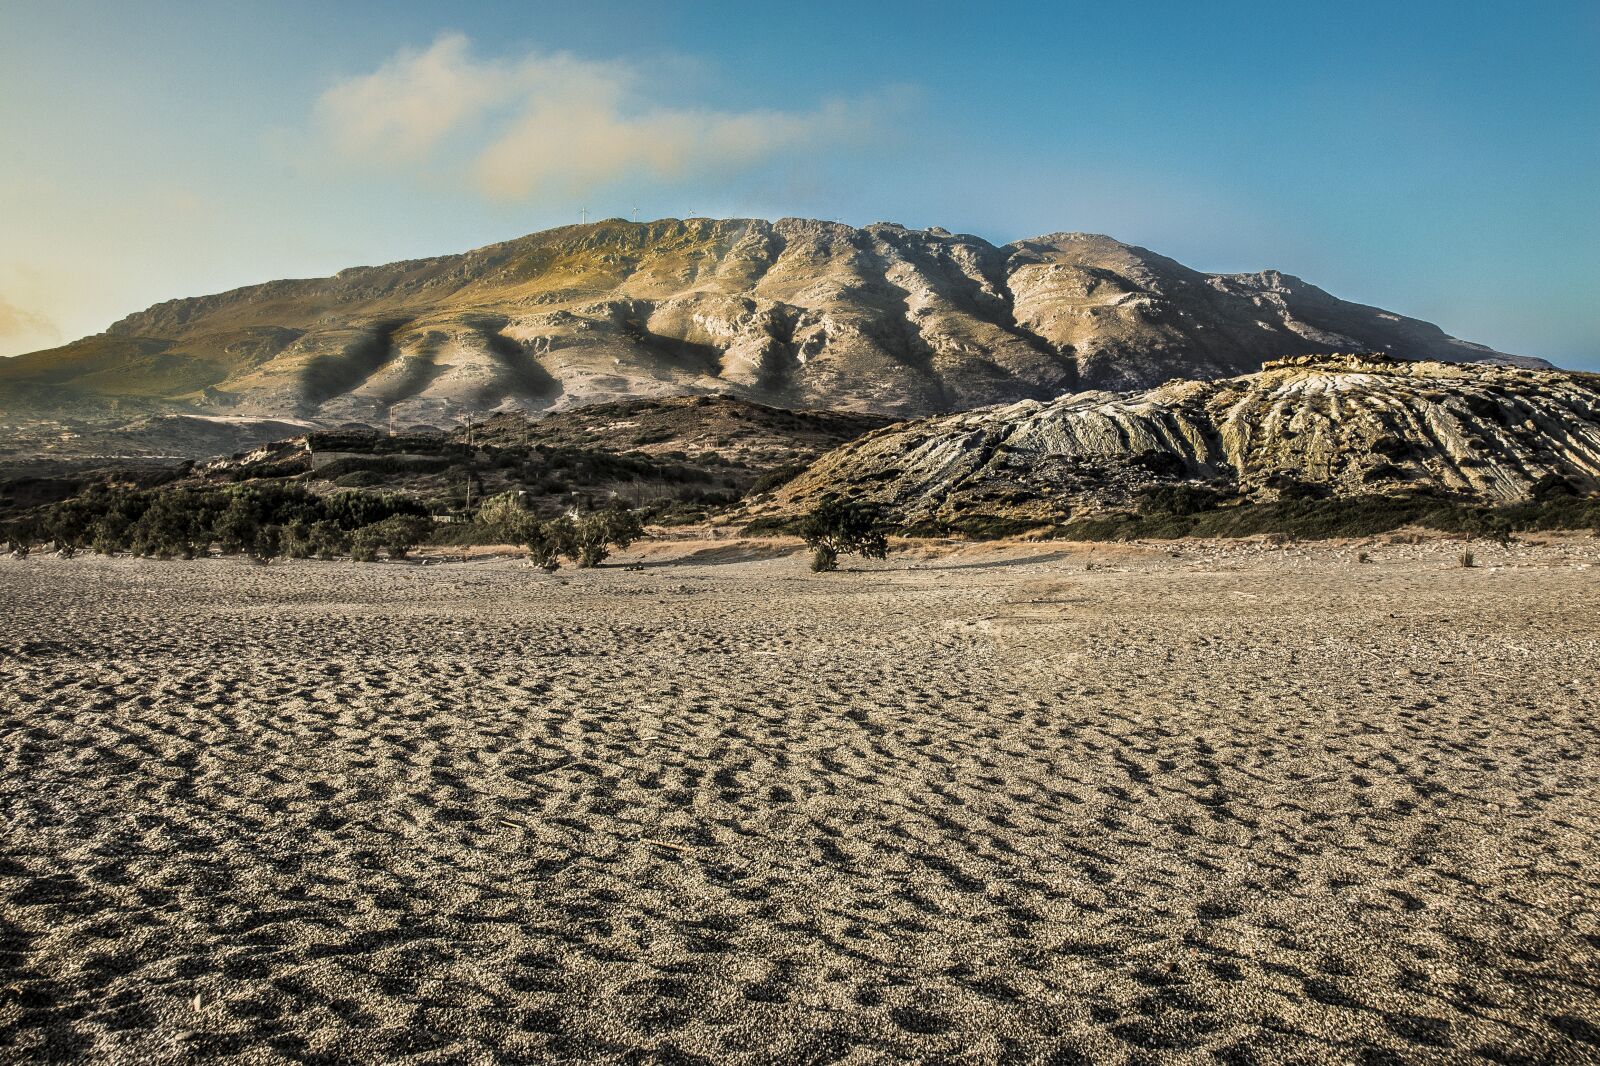 Canon EOS 6D sample photo. Desert, nature, landscape photography